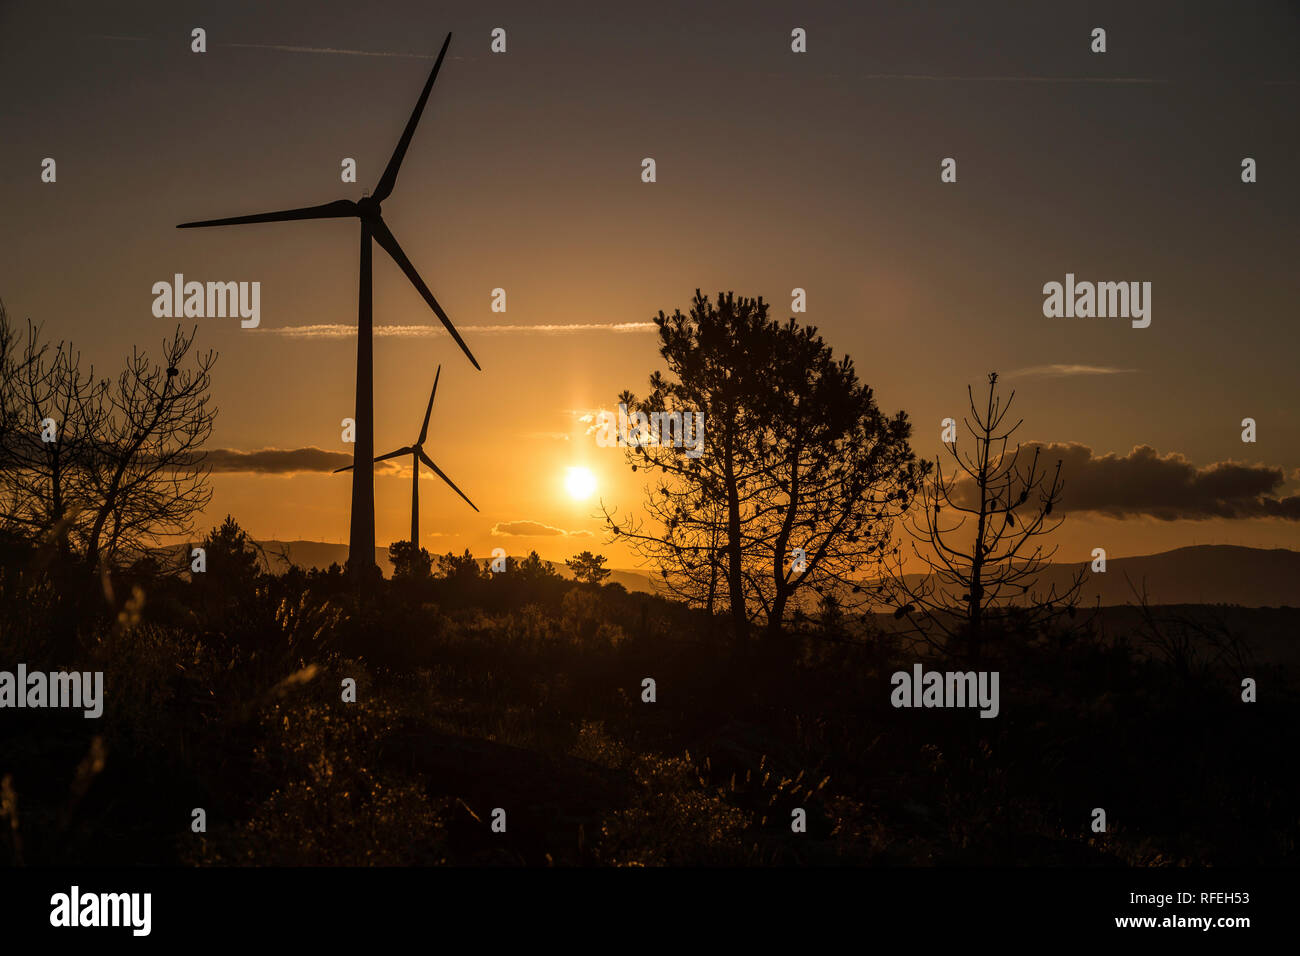 Windenergieanlage im Norden von Portugal, dem Douro Tal Stockfoto